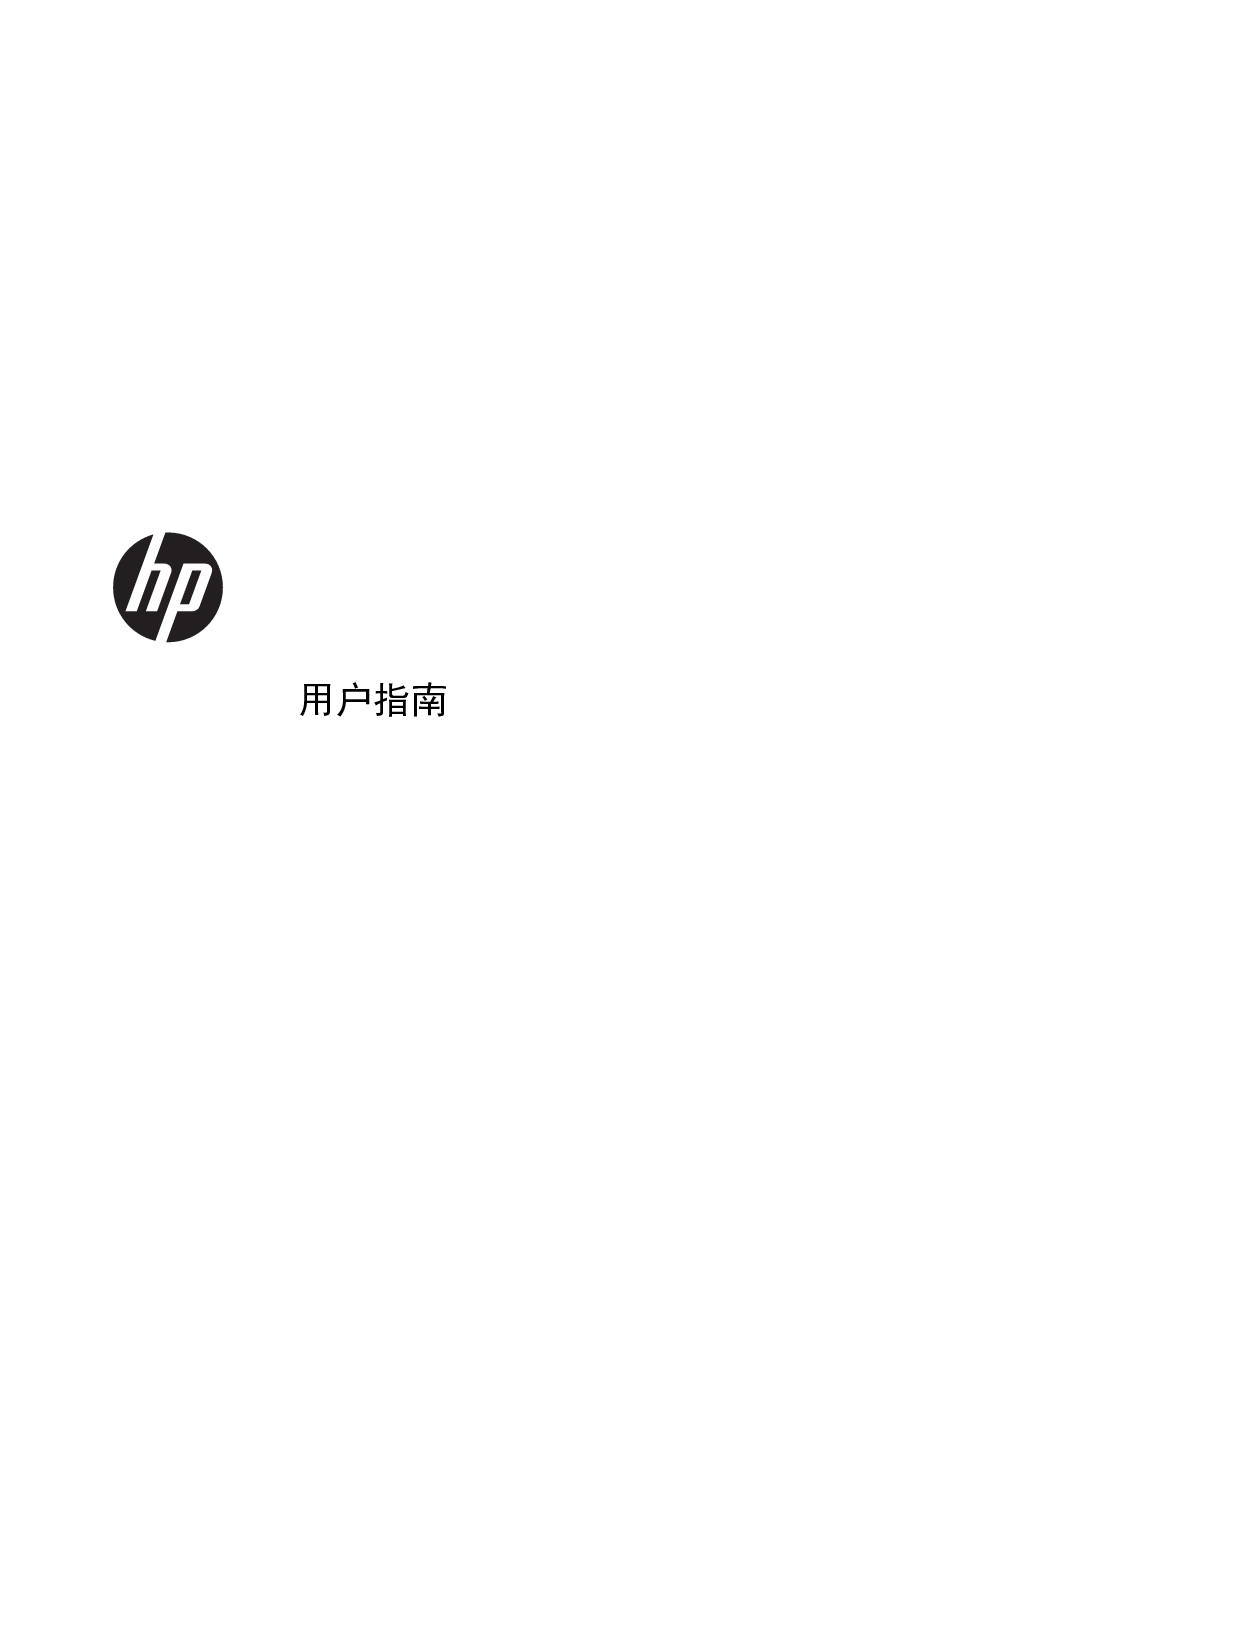 惠普 HP EliteBook 740 G1 Windows 7 用户指南 封面